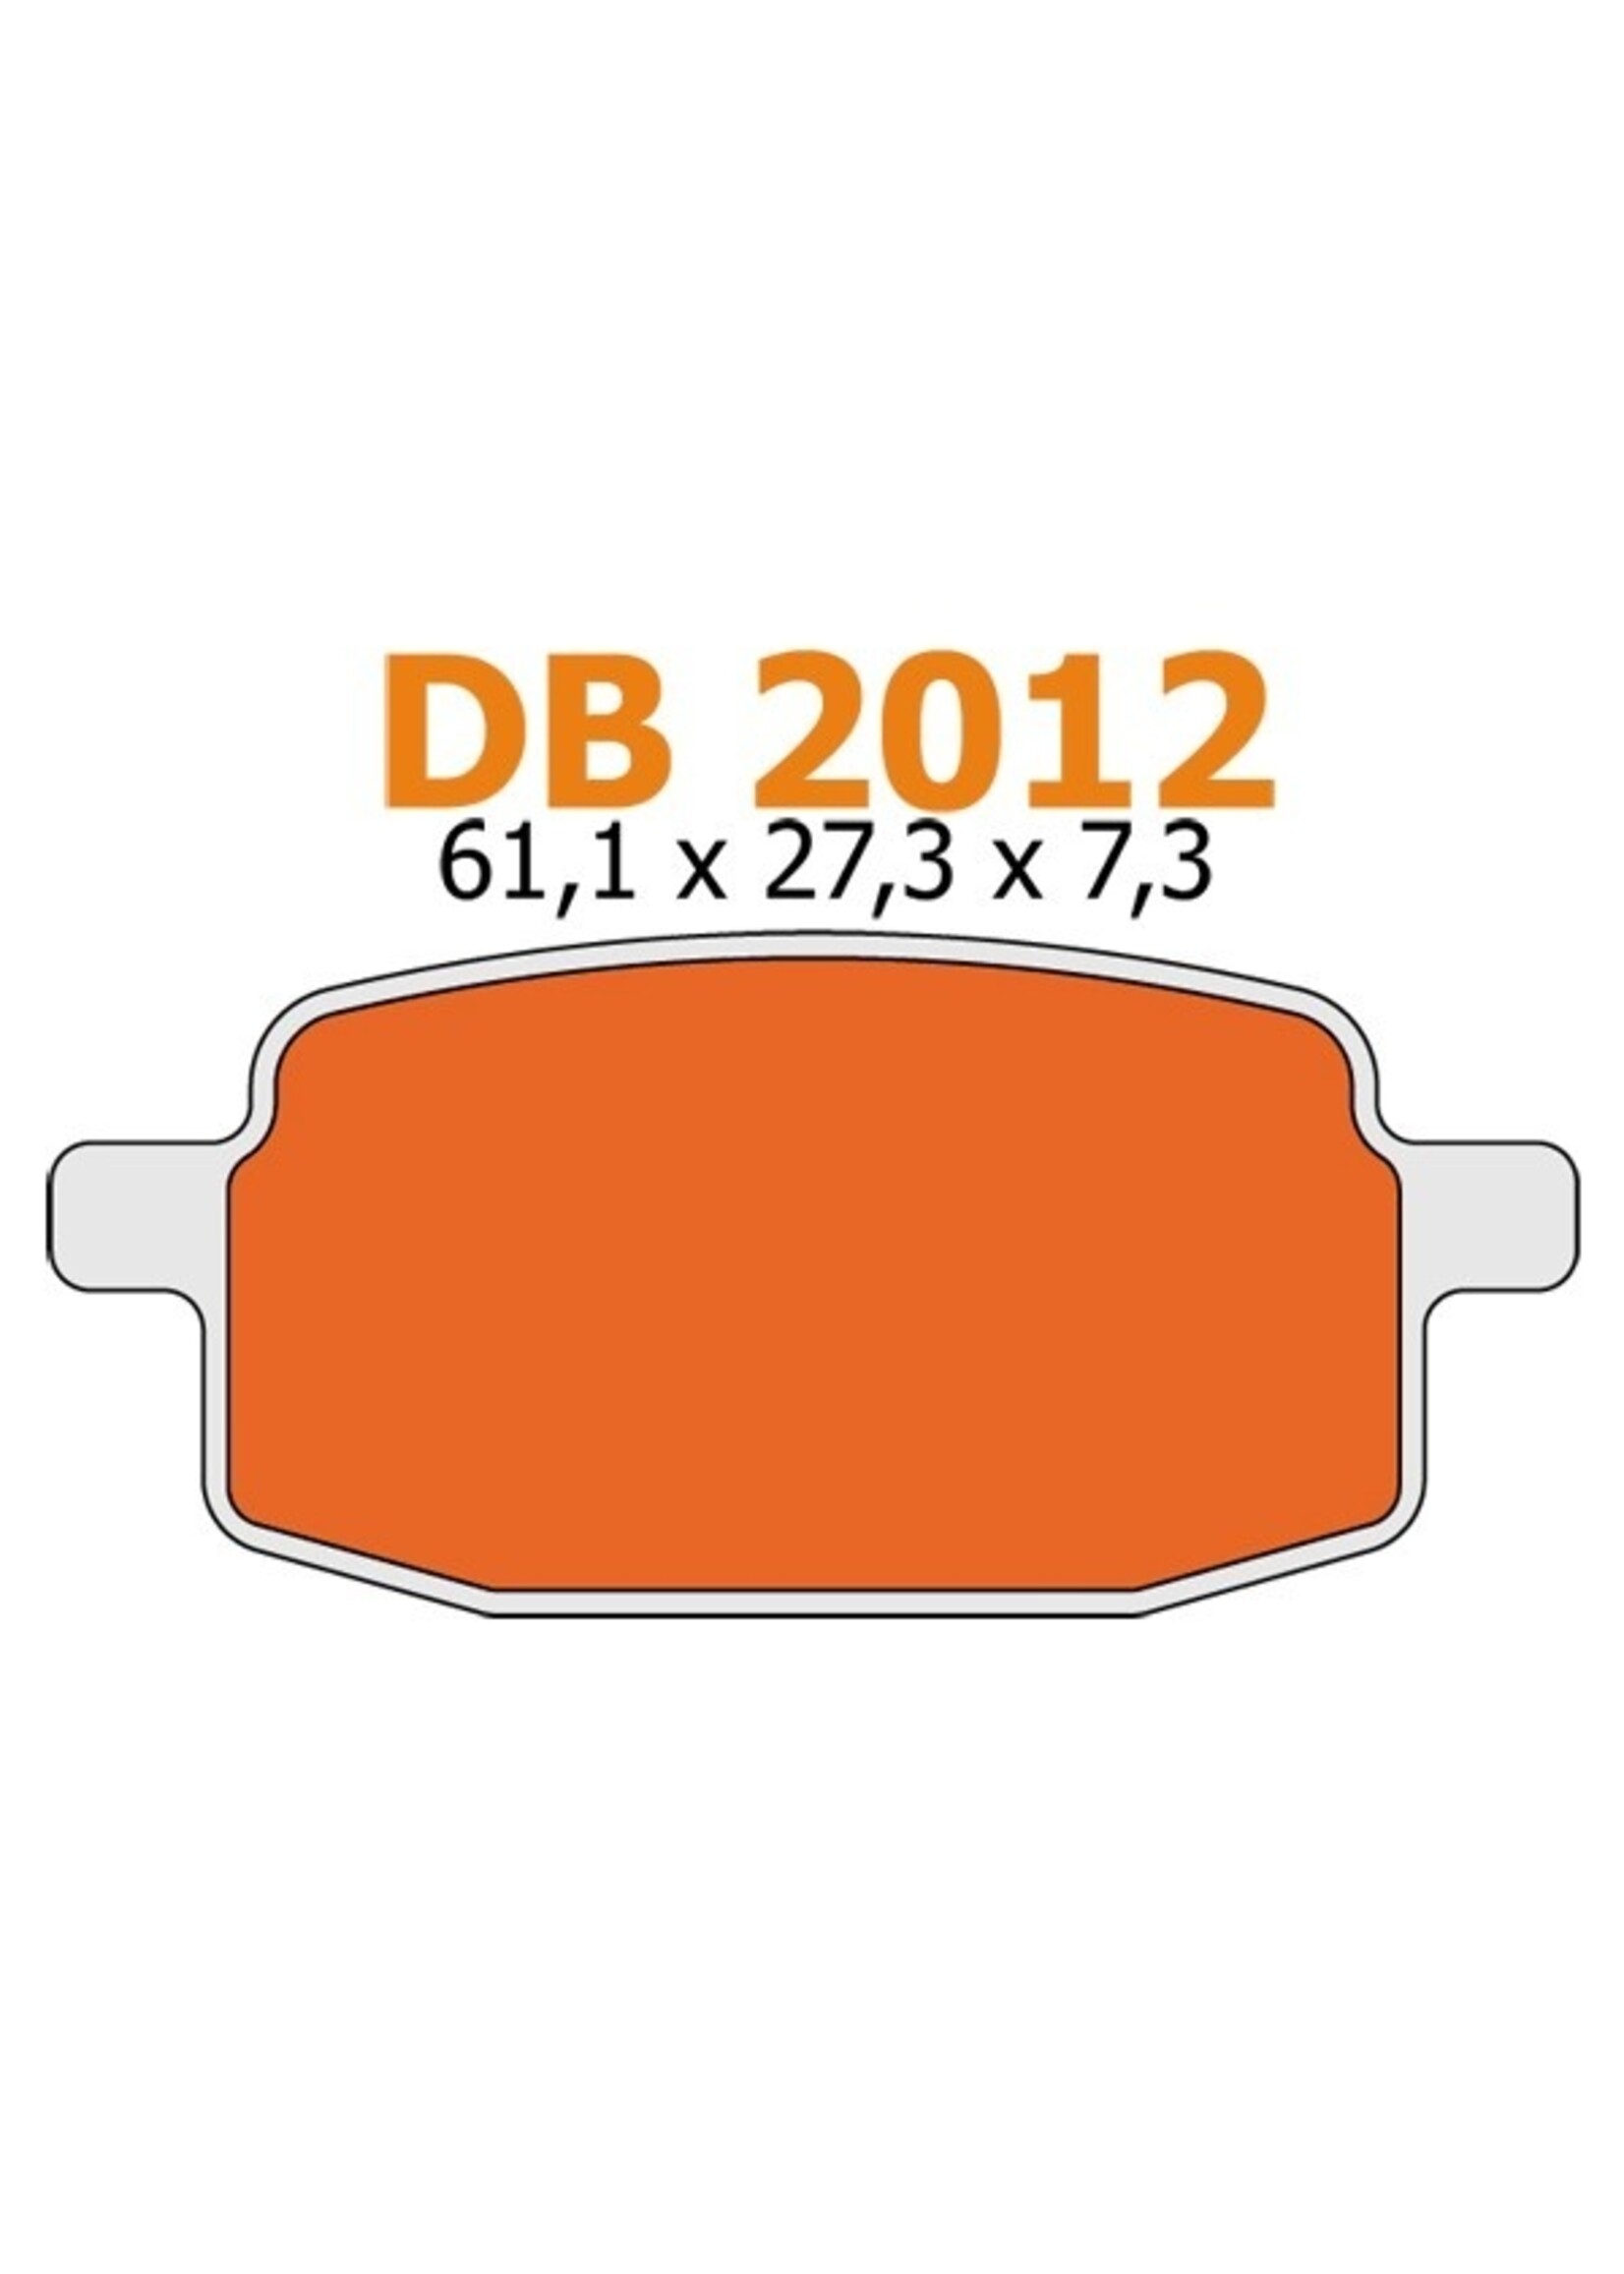 Remblokken arr/bao/big max/scor/v-clic voor delta db2012